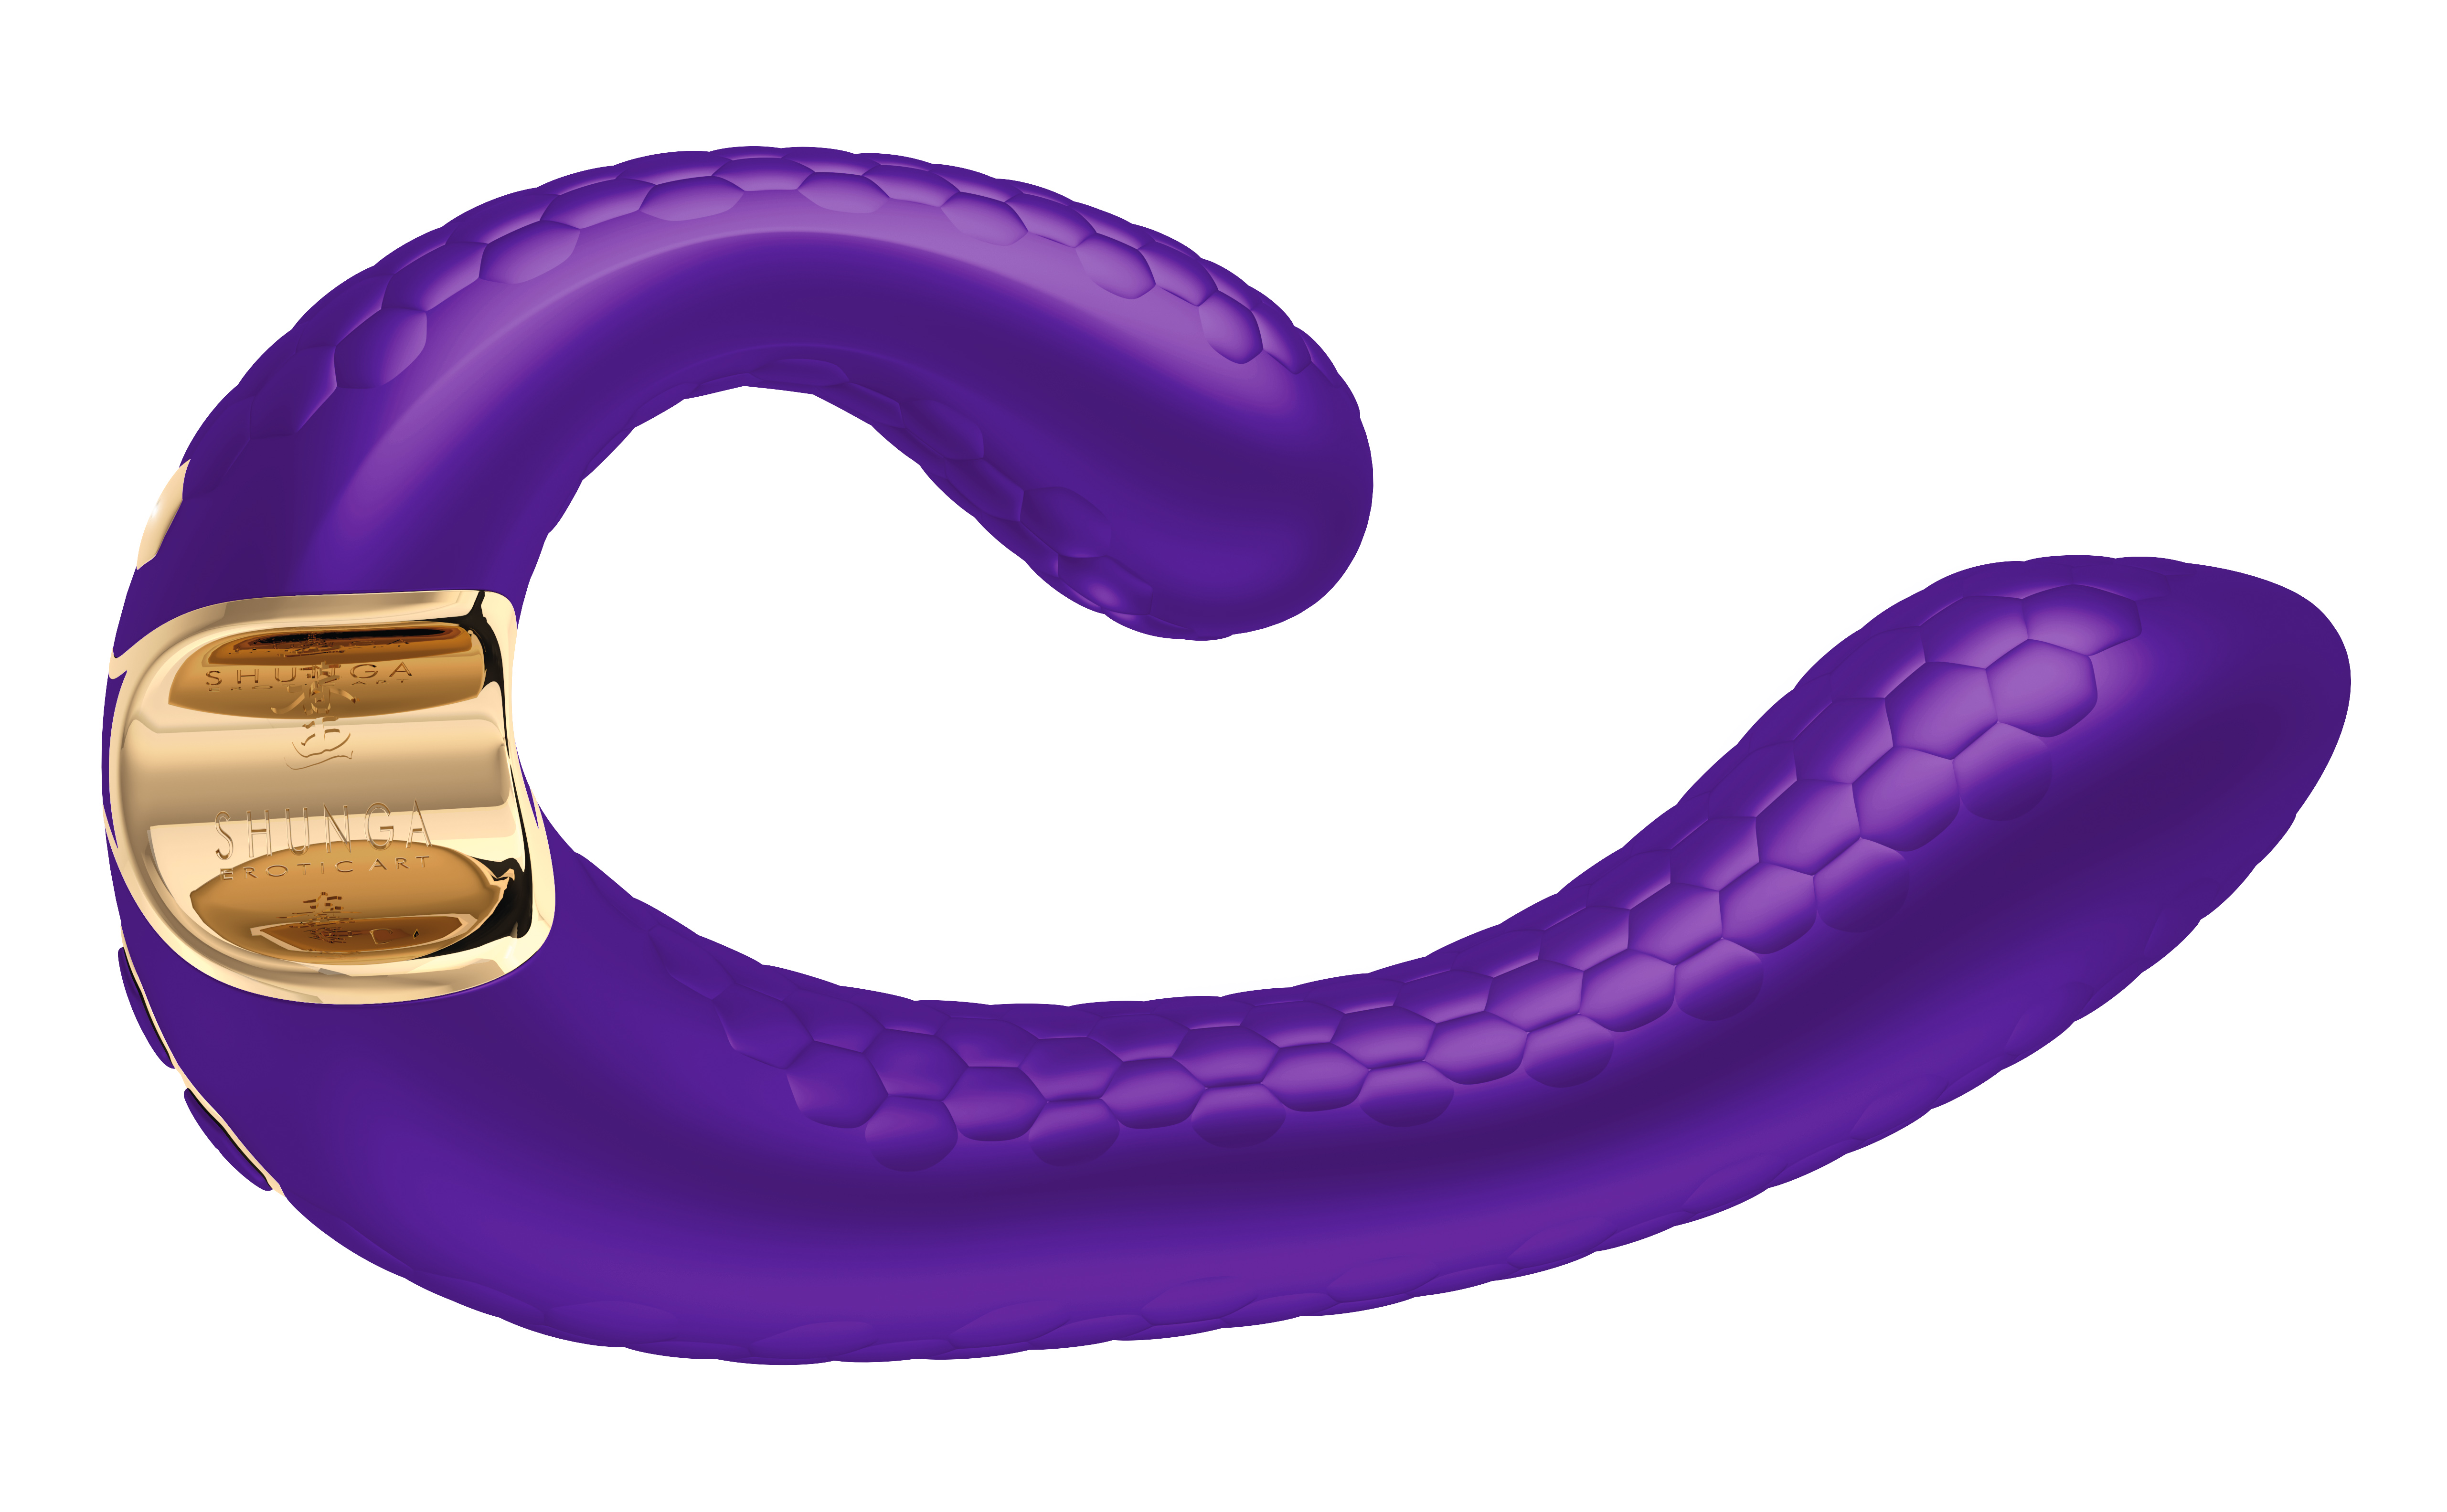 Shunga - MIYO - Intimate massager purple